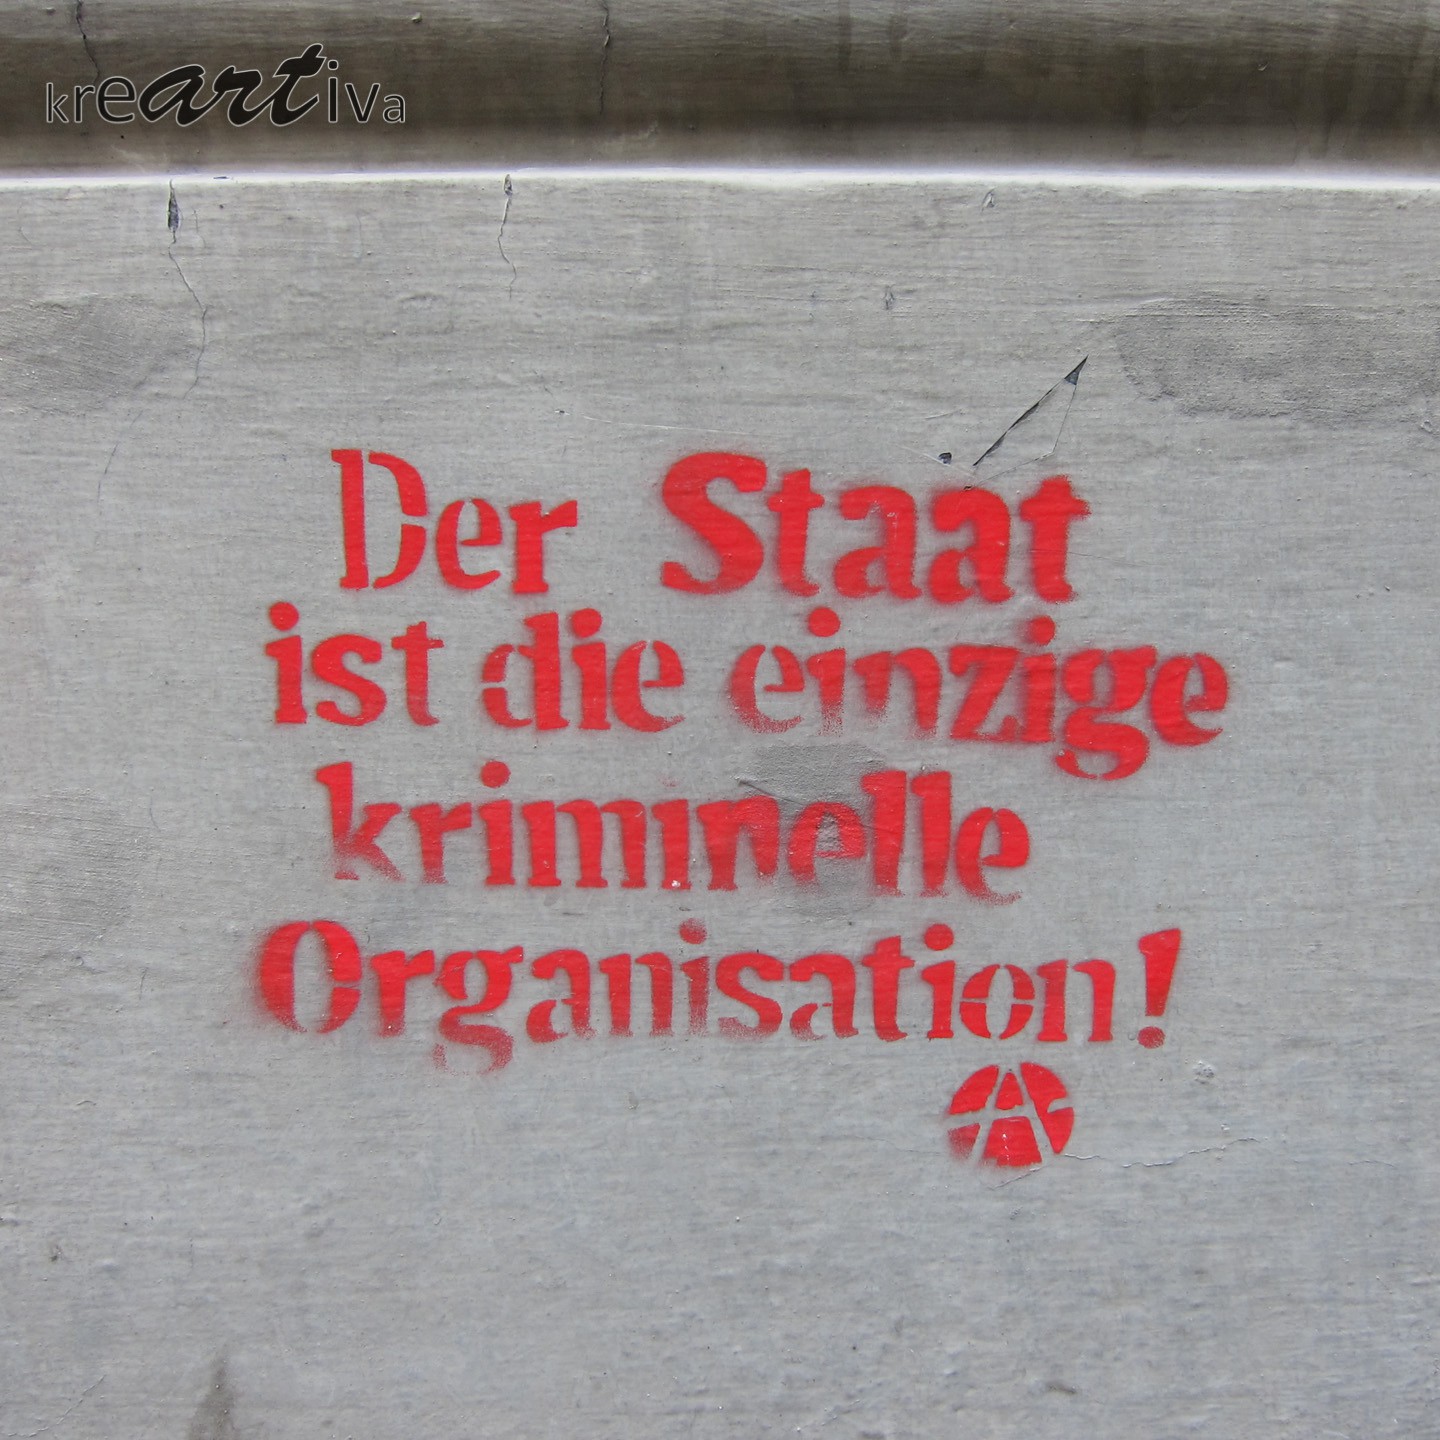 Der Staat ist die einzige kriminelle Organisation! Wien Österreich 2014.